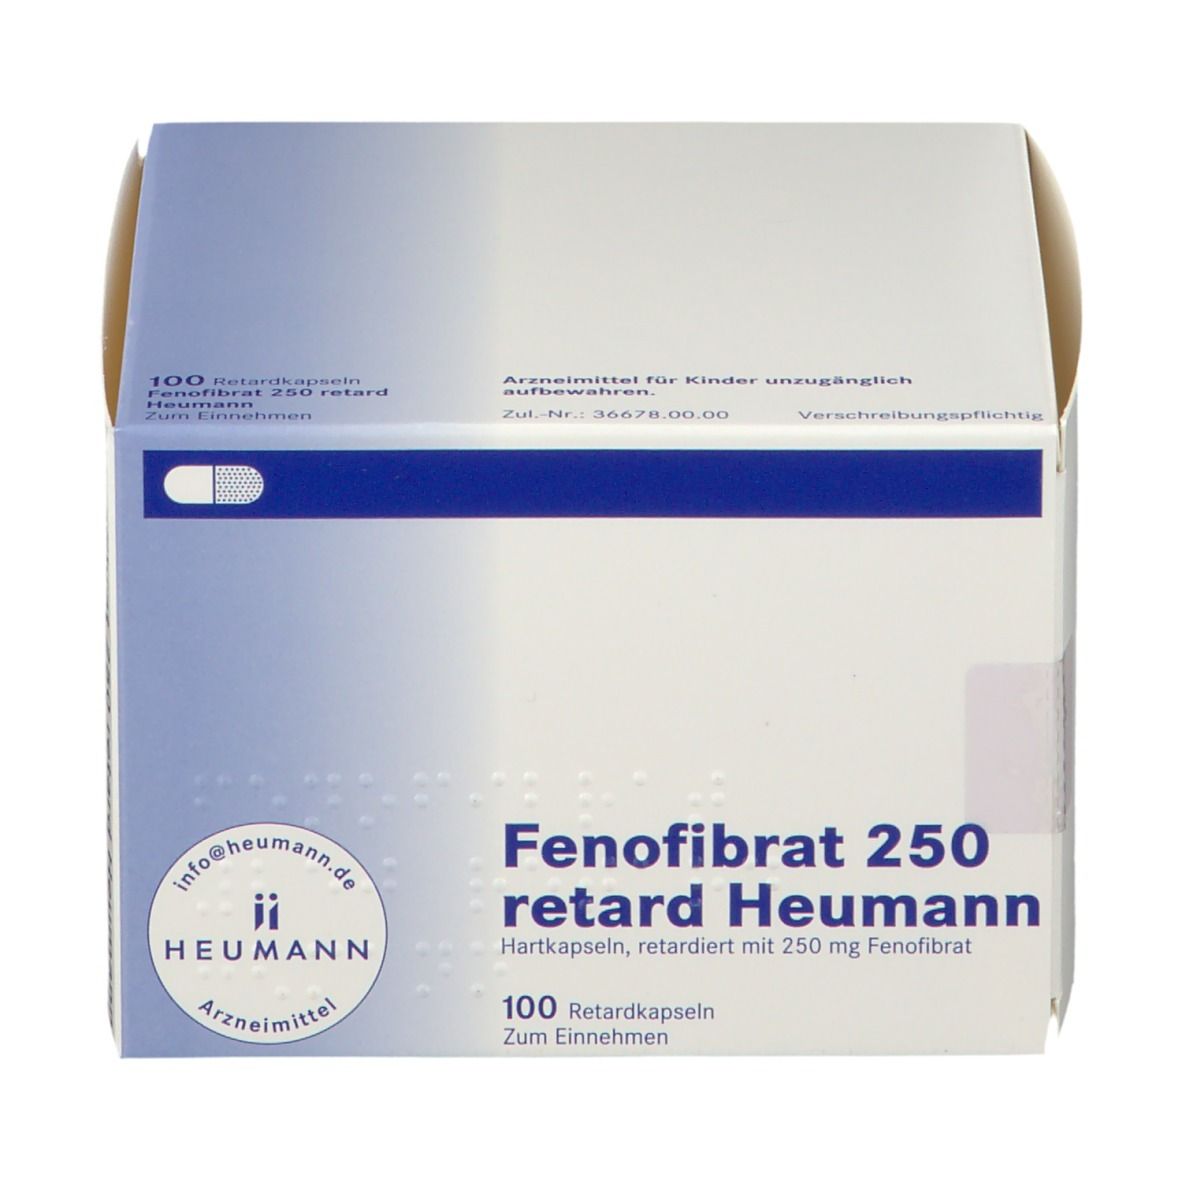 Fenofibrat 250 retard Heumann